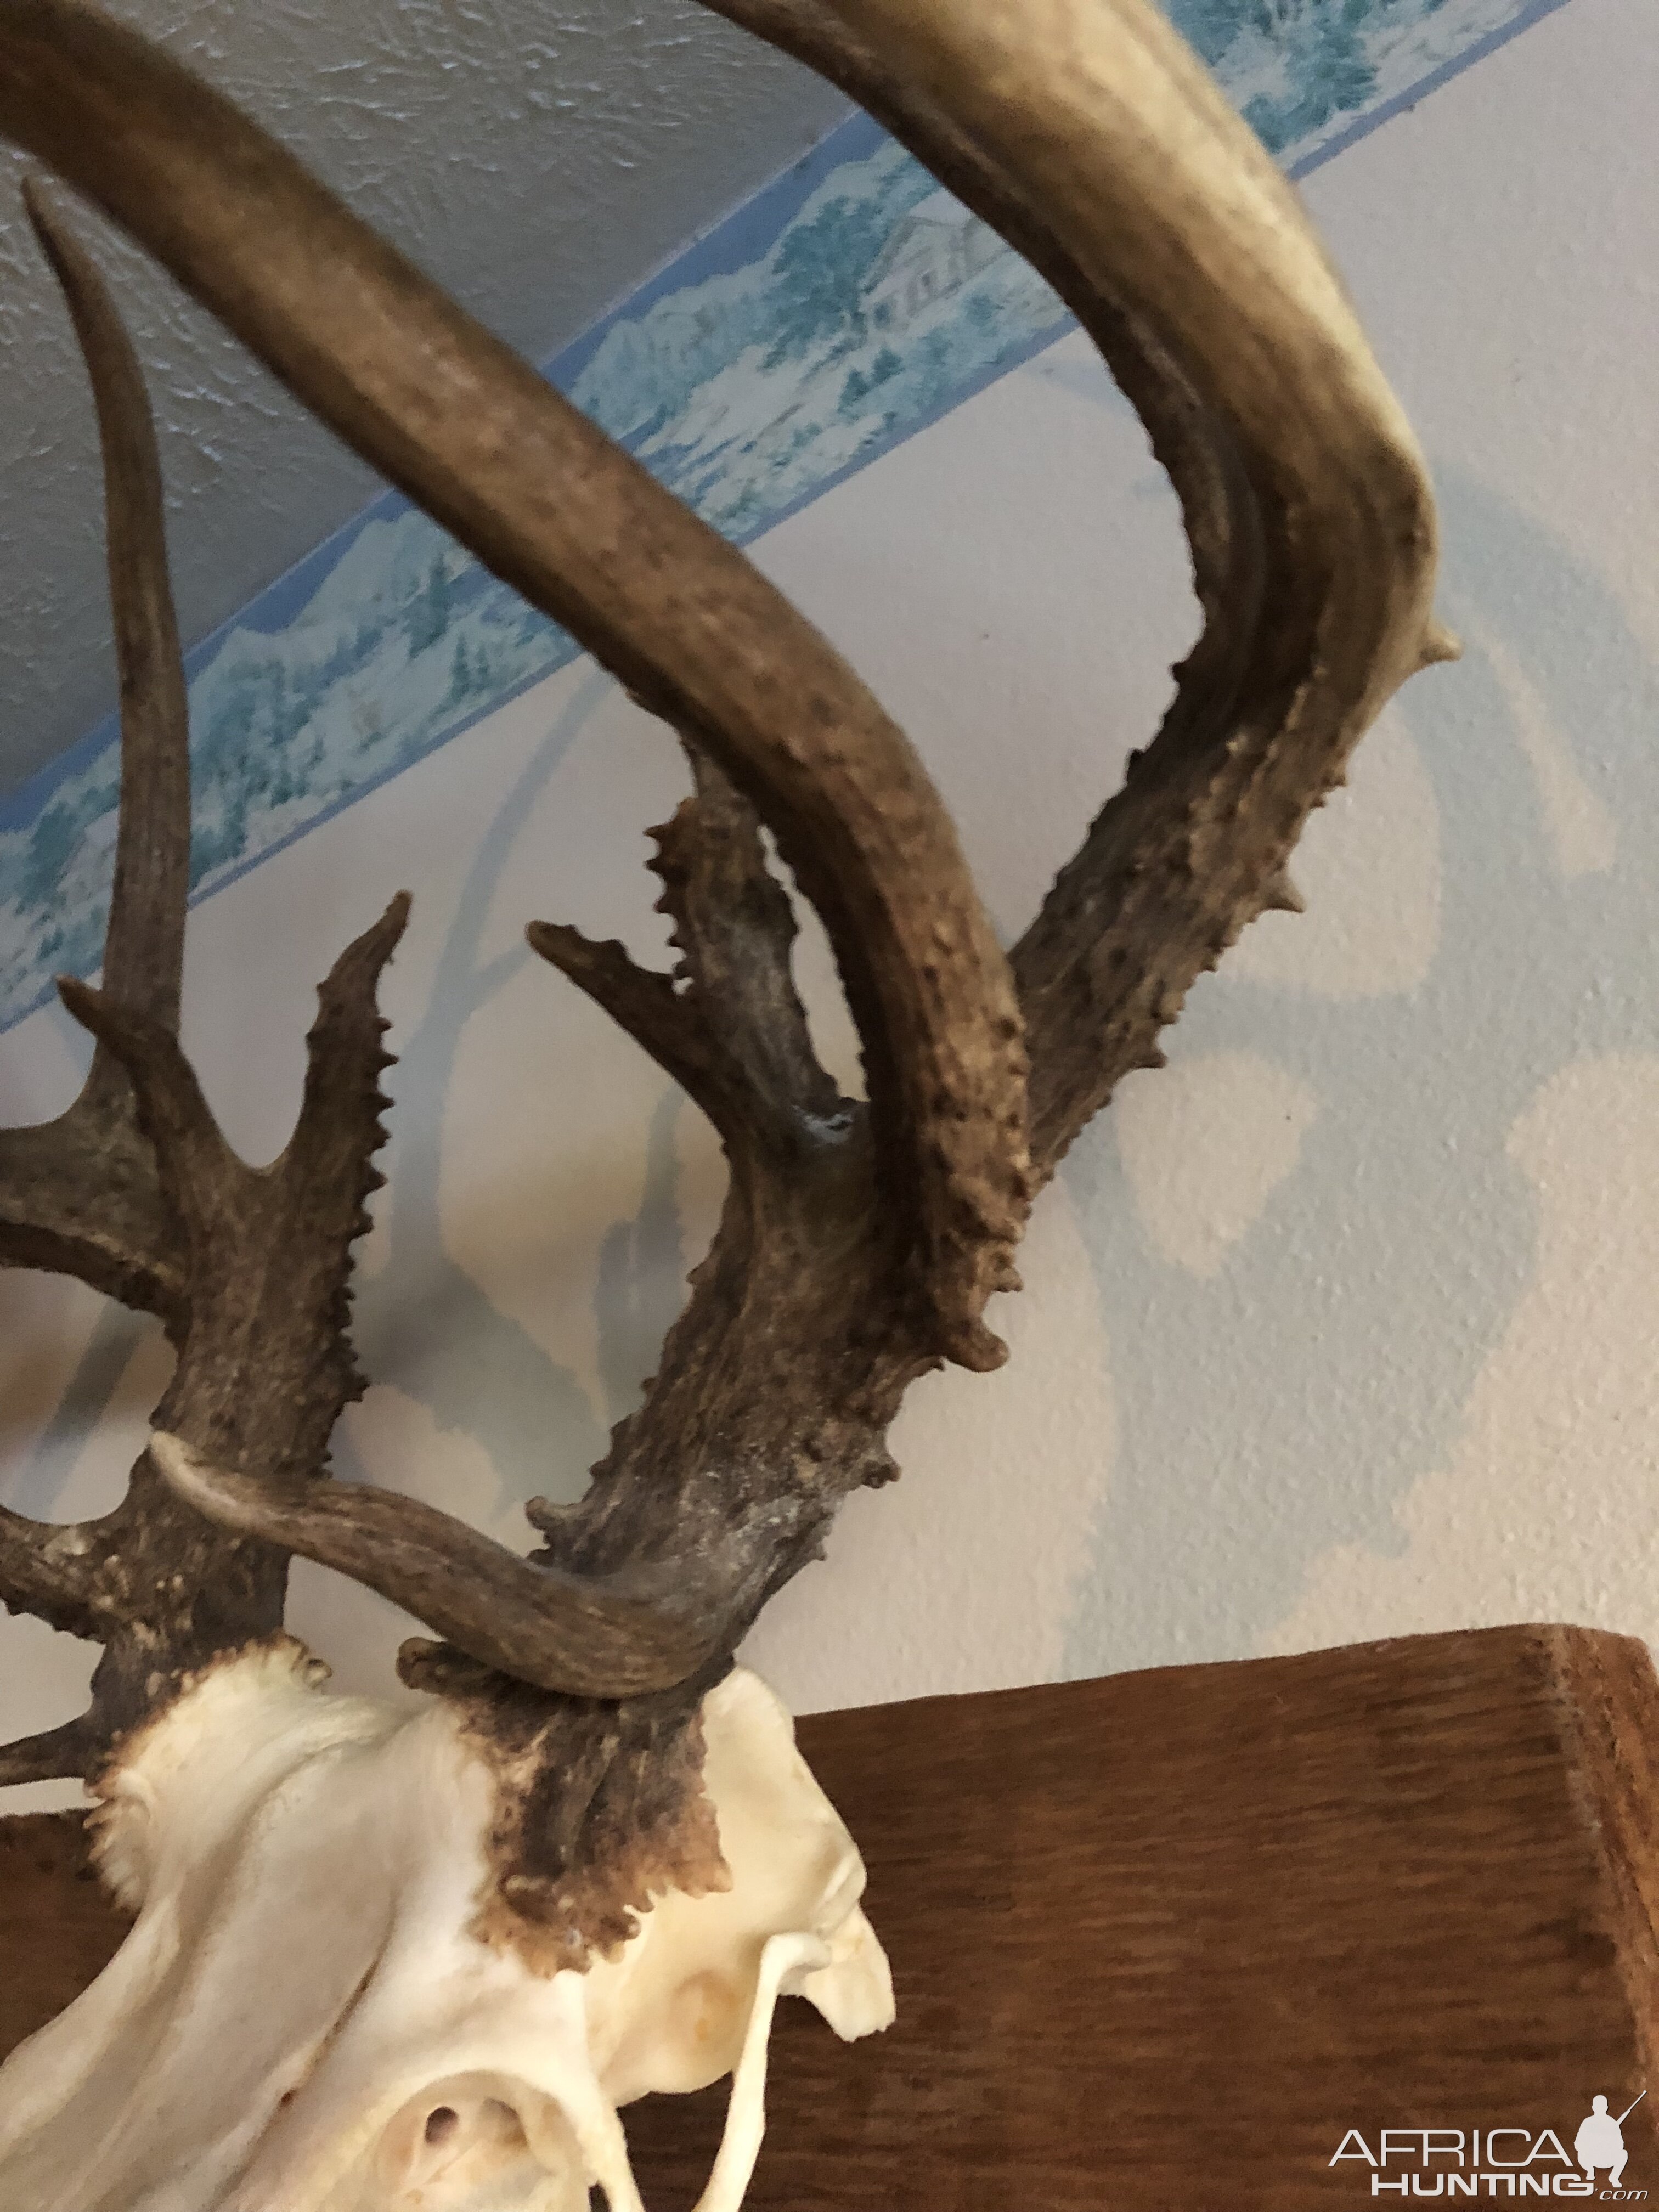 Deer European Skull Mount Taxidermy